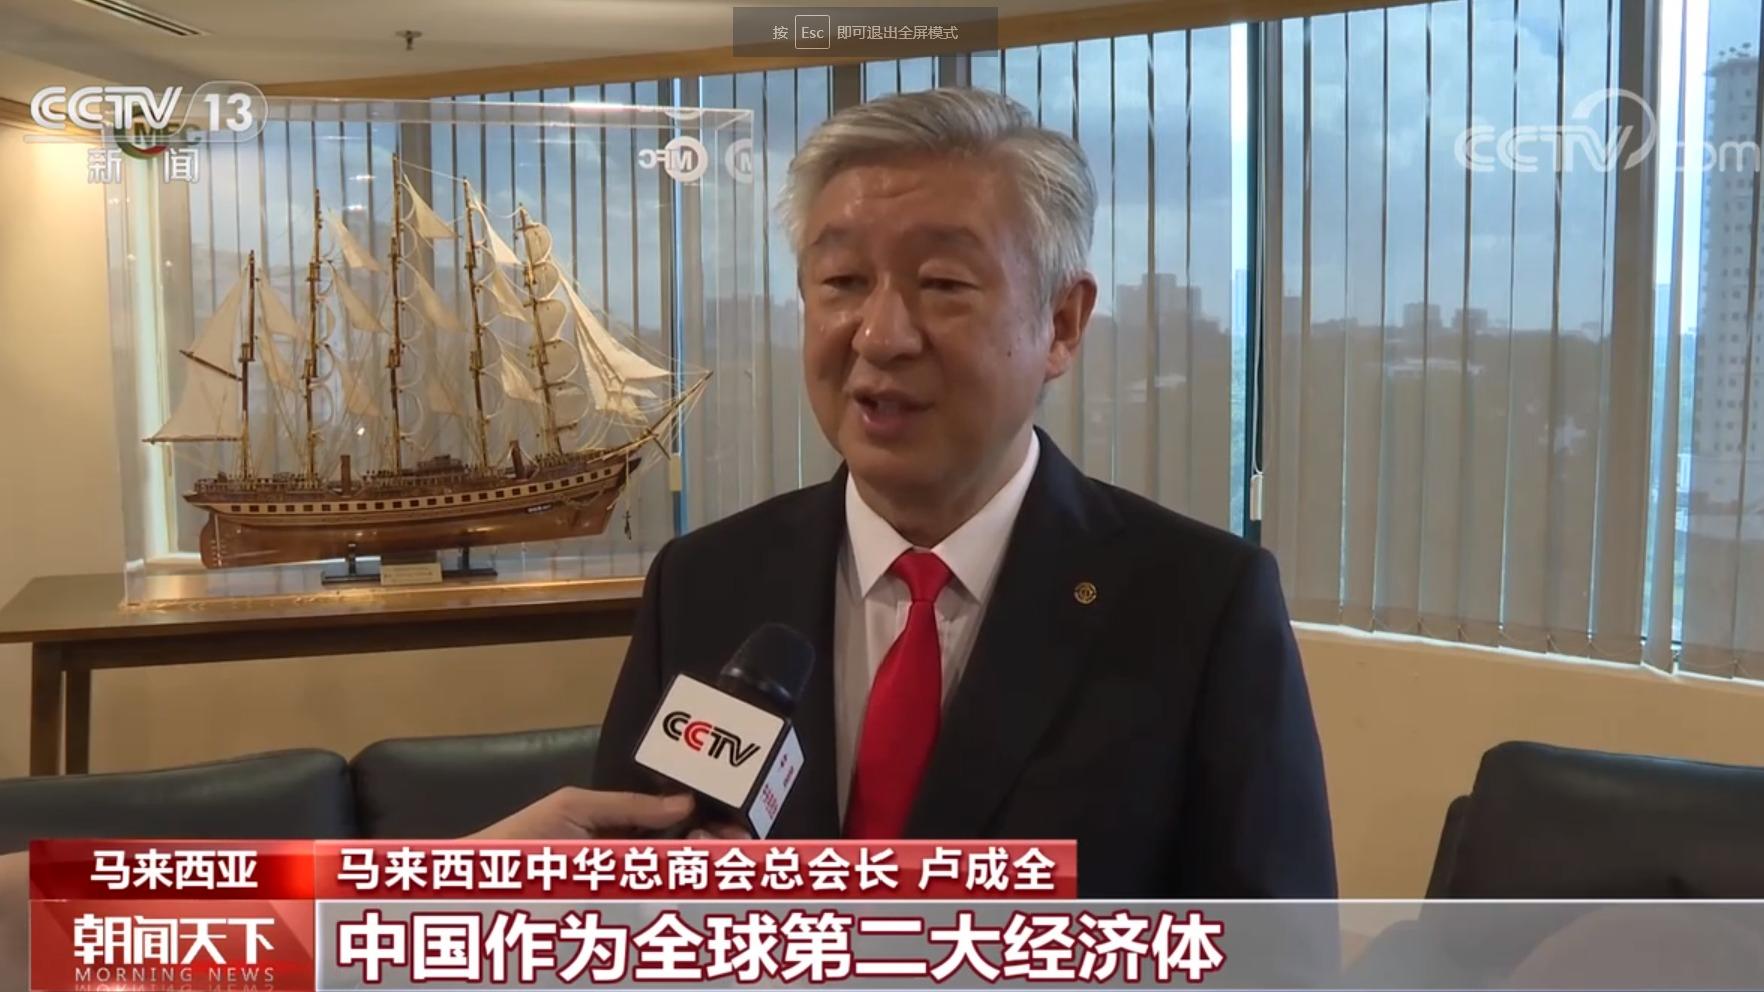 Лу Чэнчюань: Дэлхийн эдийн засгийг тогтворжуулагч нь Хятад болж байна